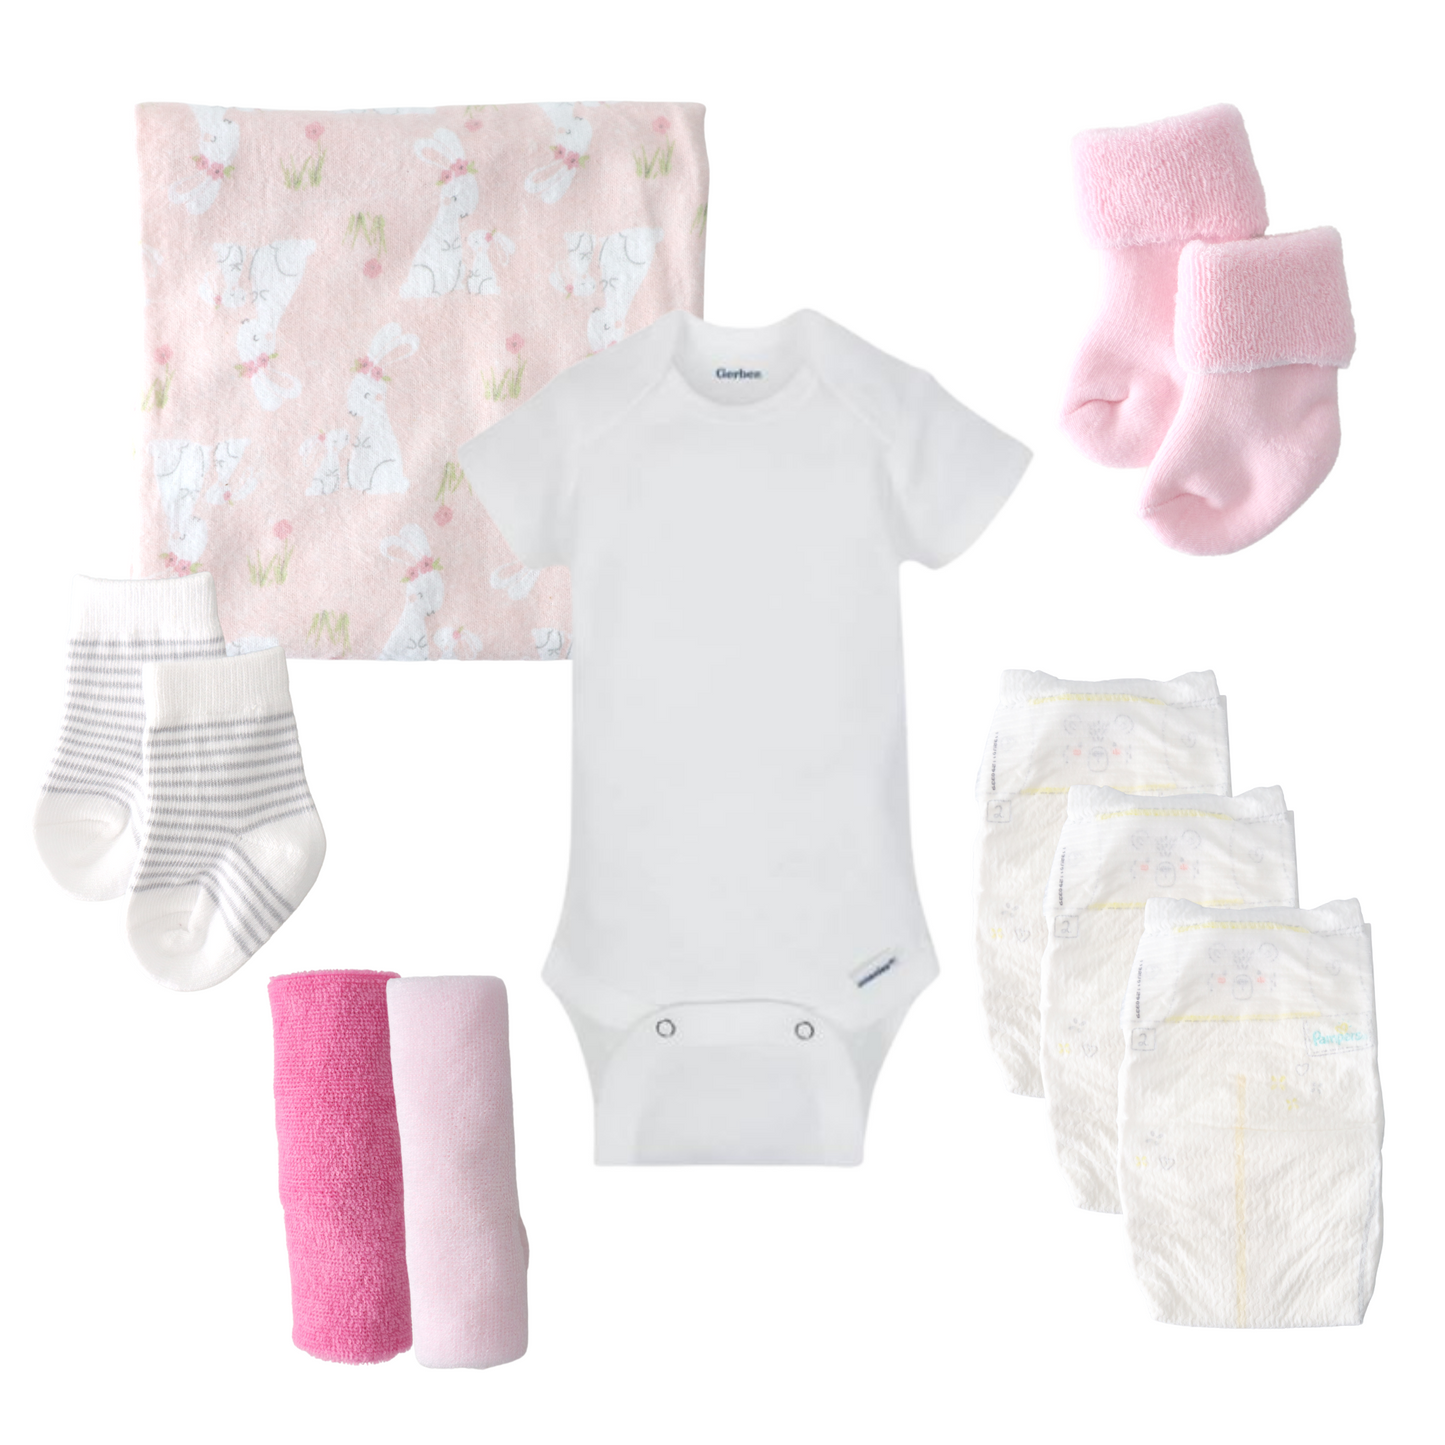 pink baby bouquet contents onesie blanket socks diapers washcloths